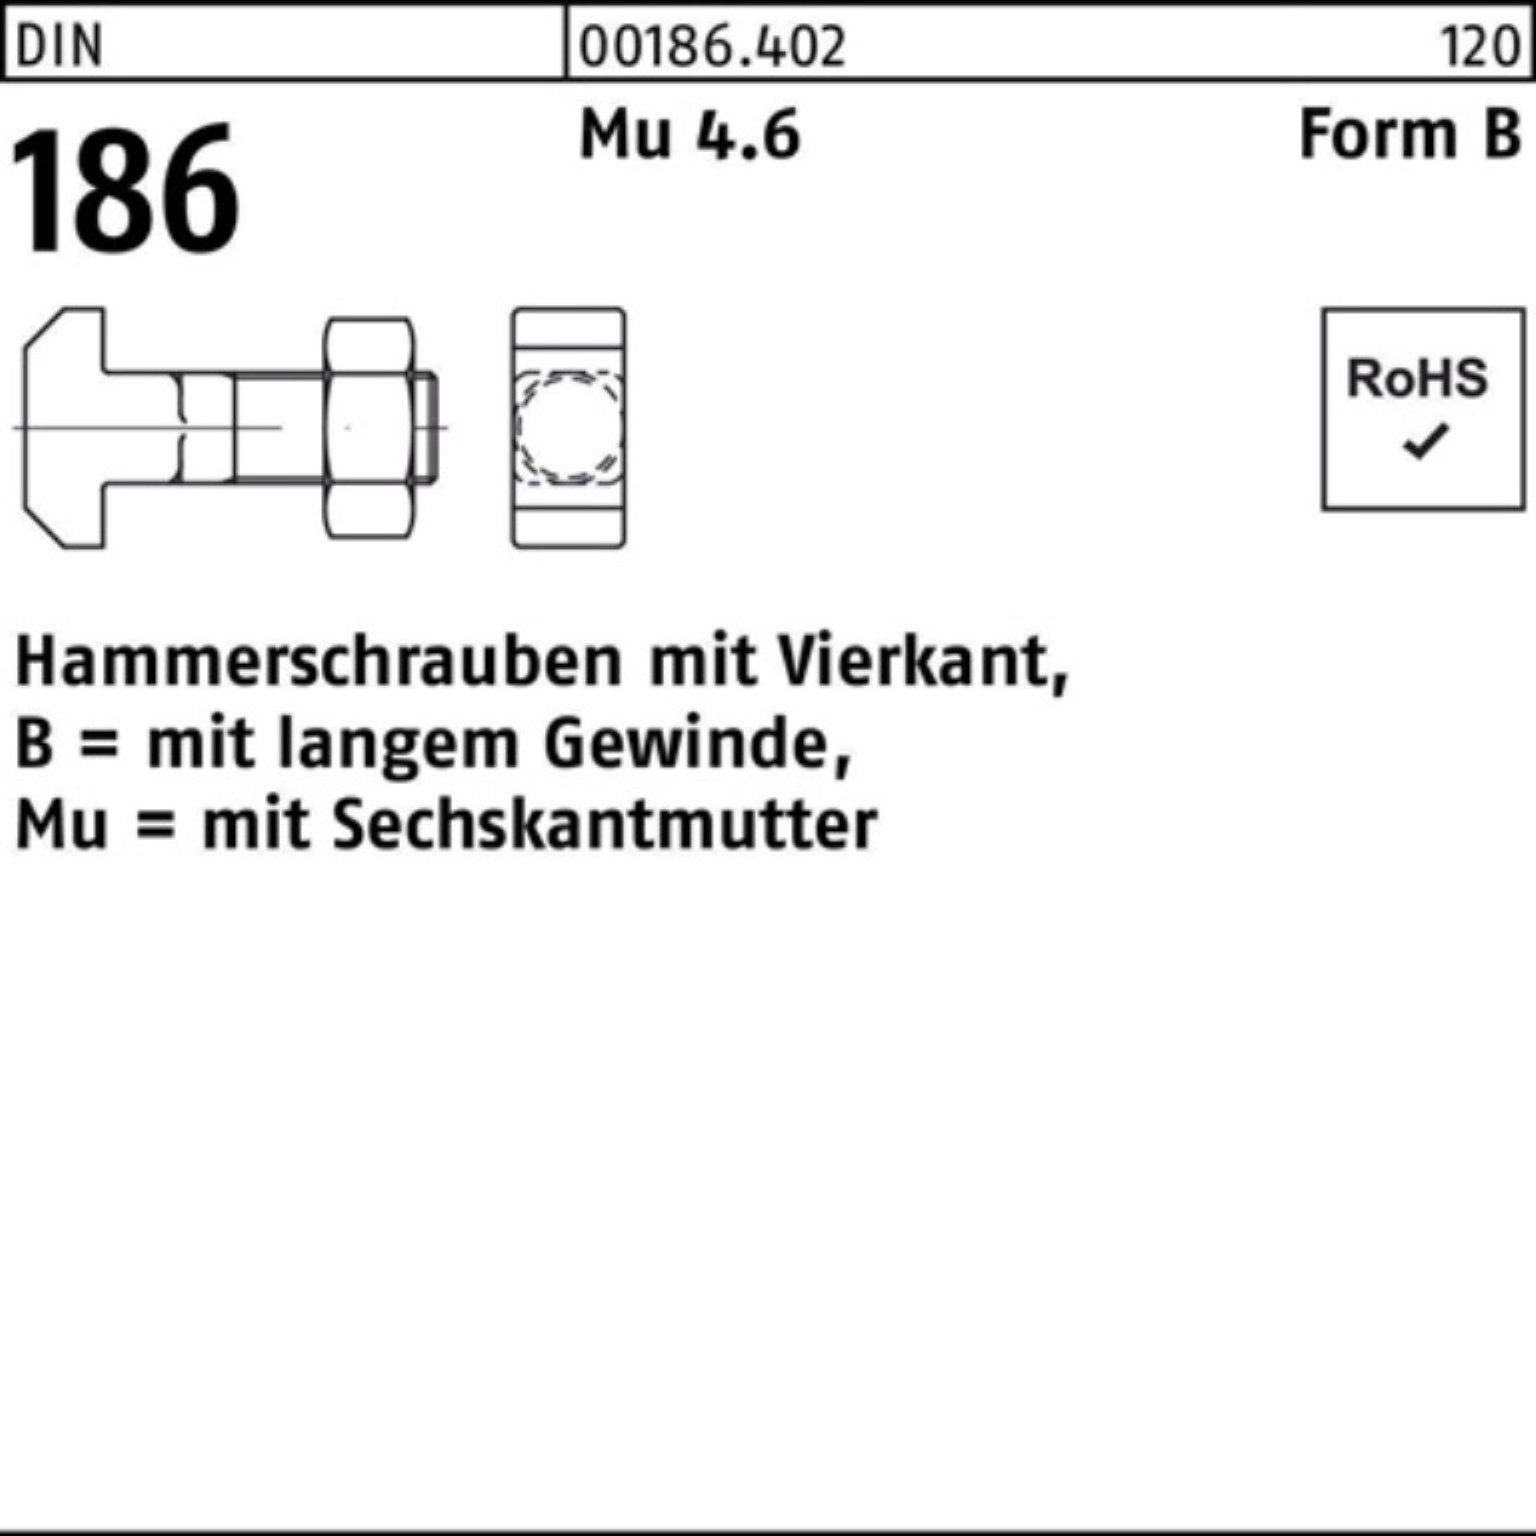 Reyher Schraube 100er Pack Hammerschraube DIN 186 FormB Vierkant 6-ktmutter BM 8x 60 M